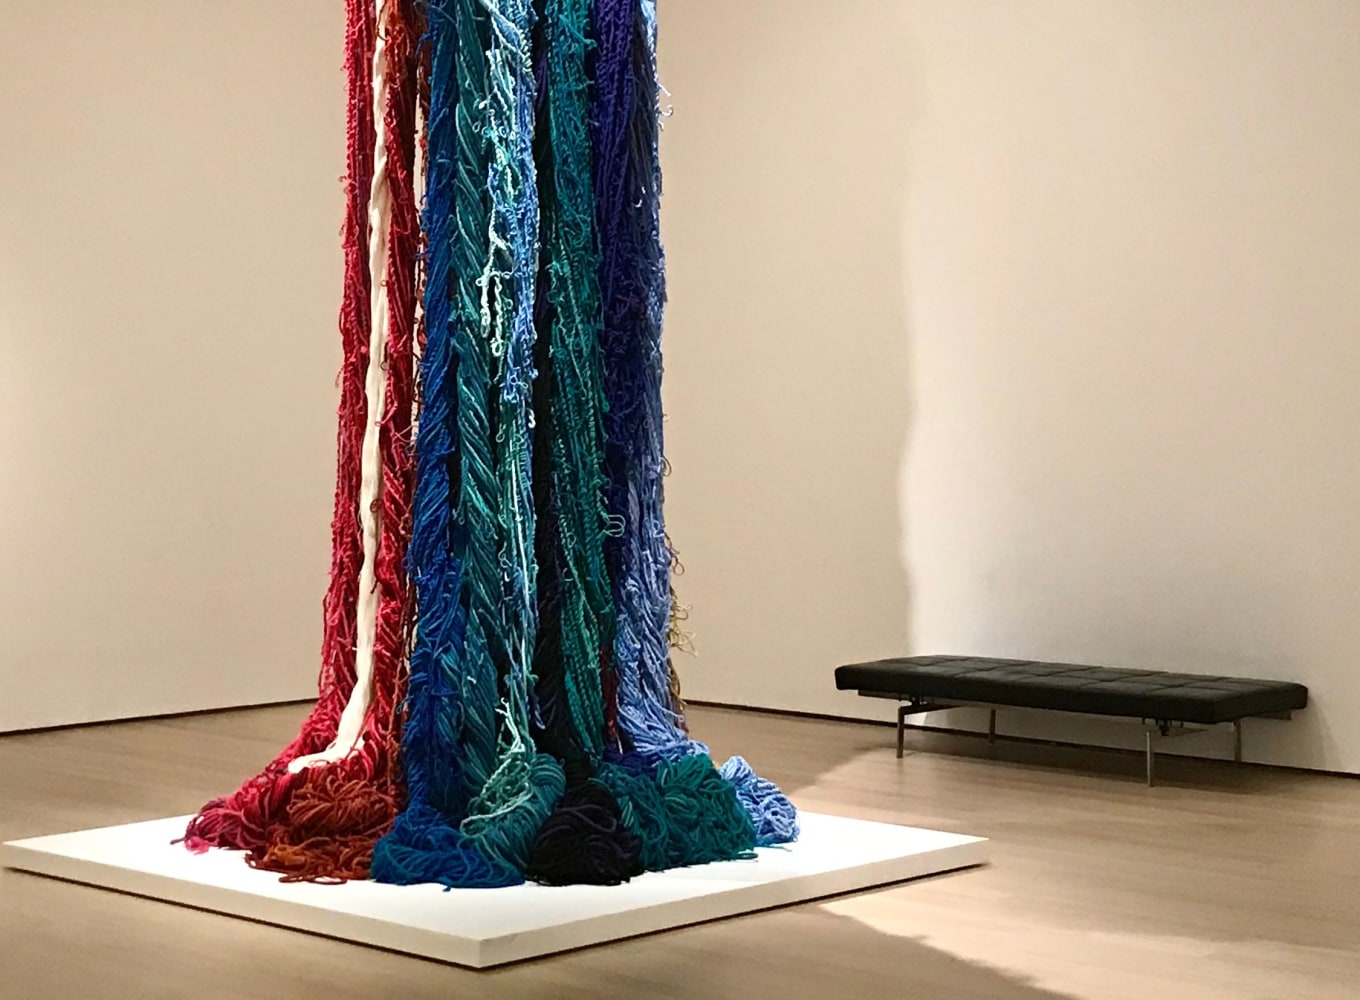 Sheila Hicks at MoMA